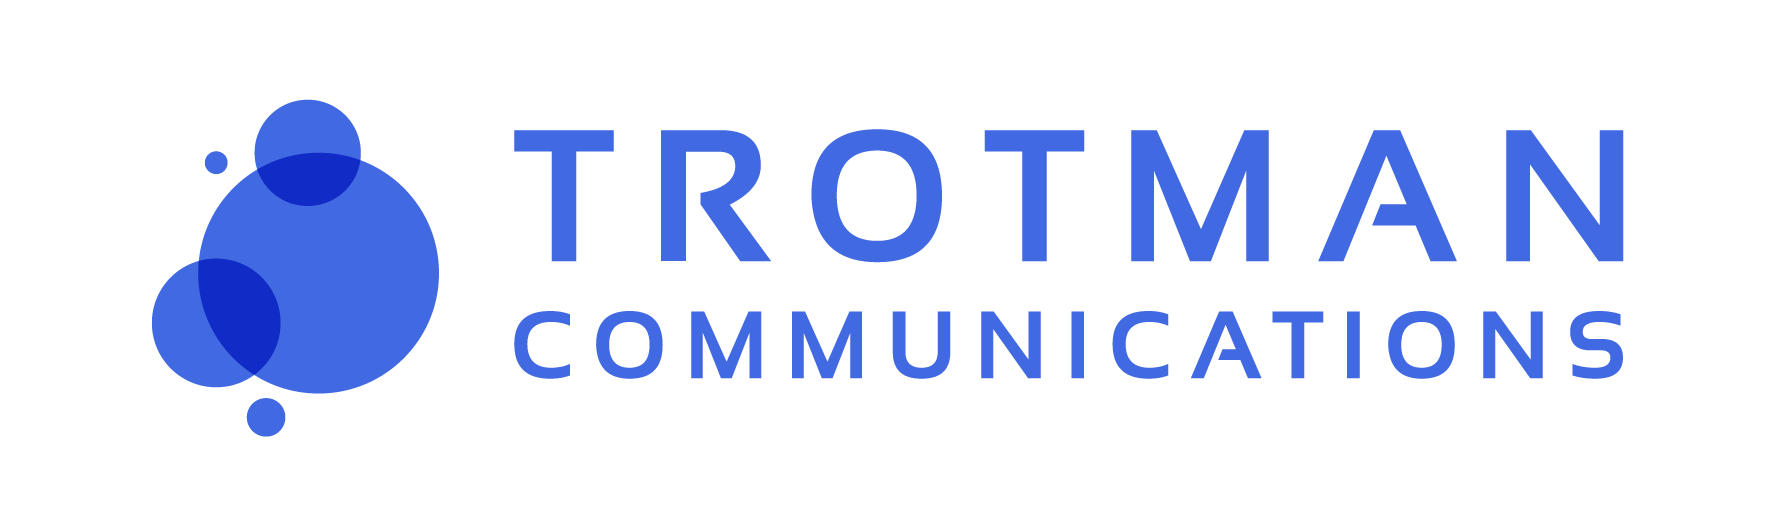 Trotman Communications